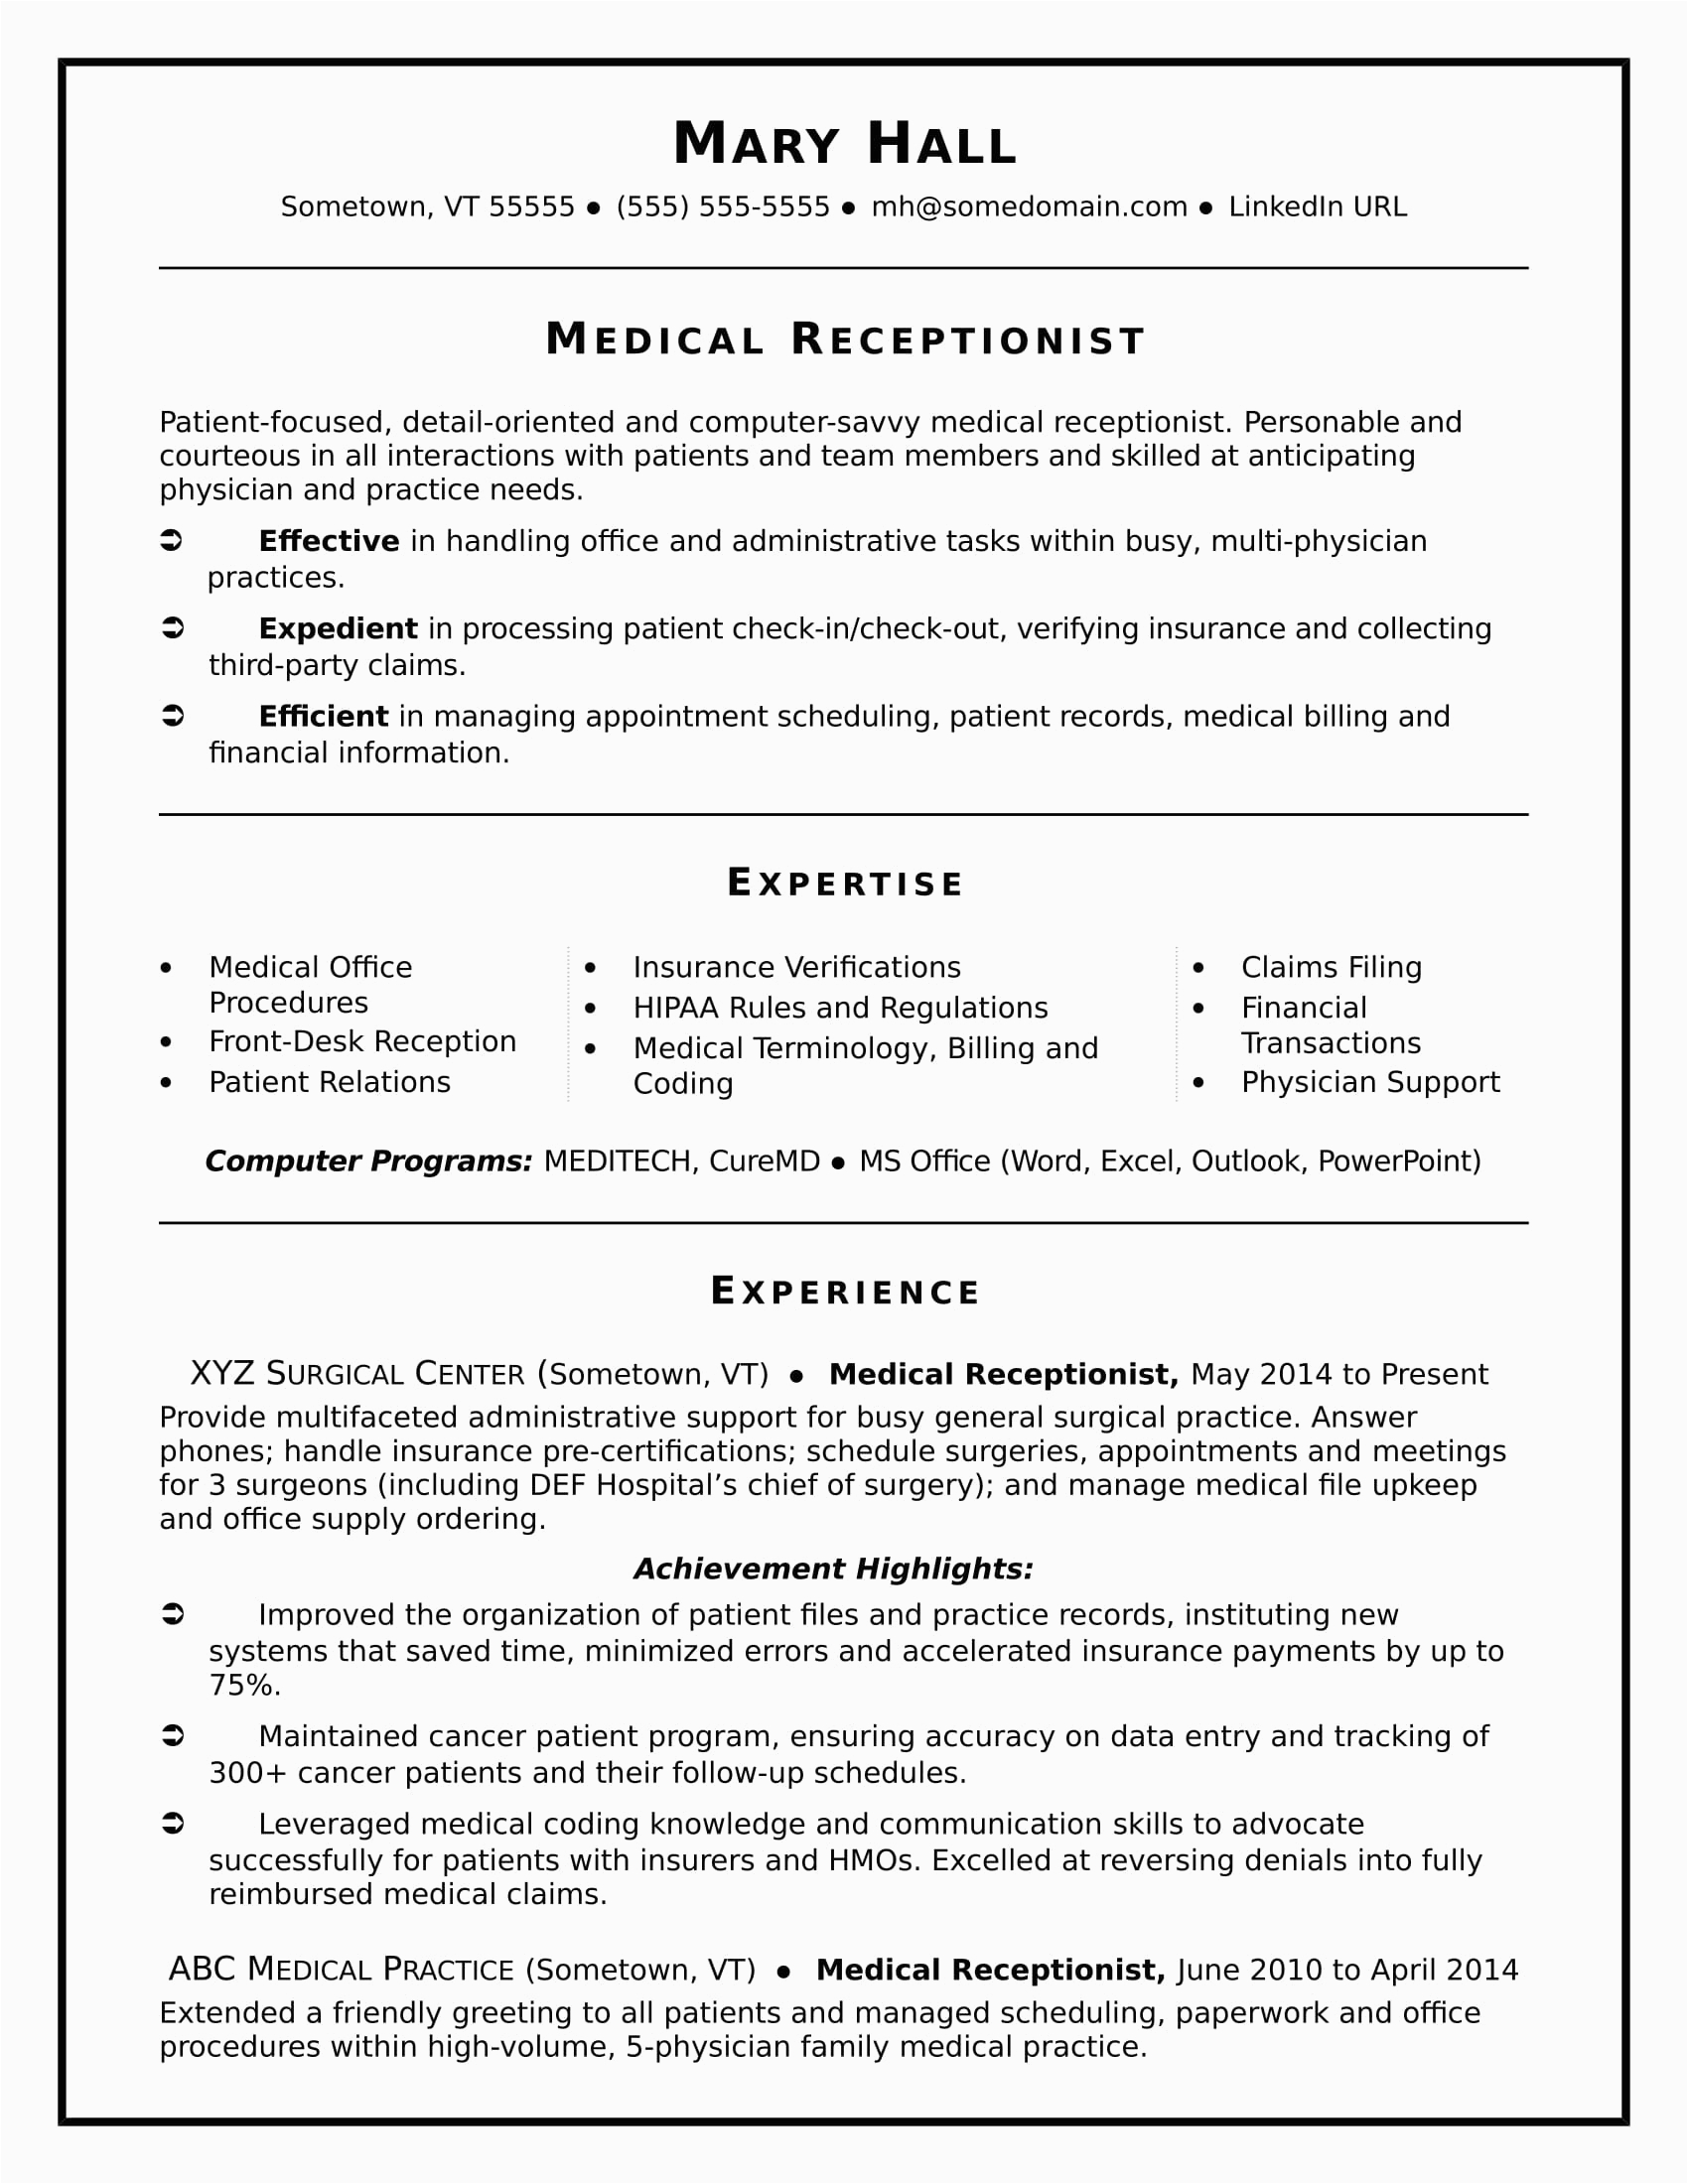 Sample Resume for Medical Receptionist Position Medical Receptionist Resume Sample